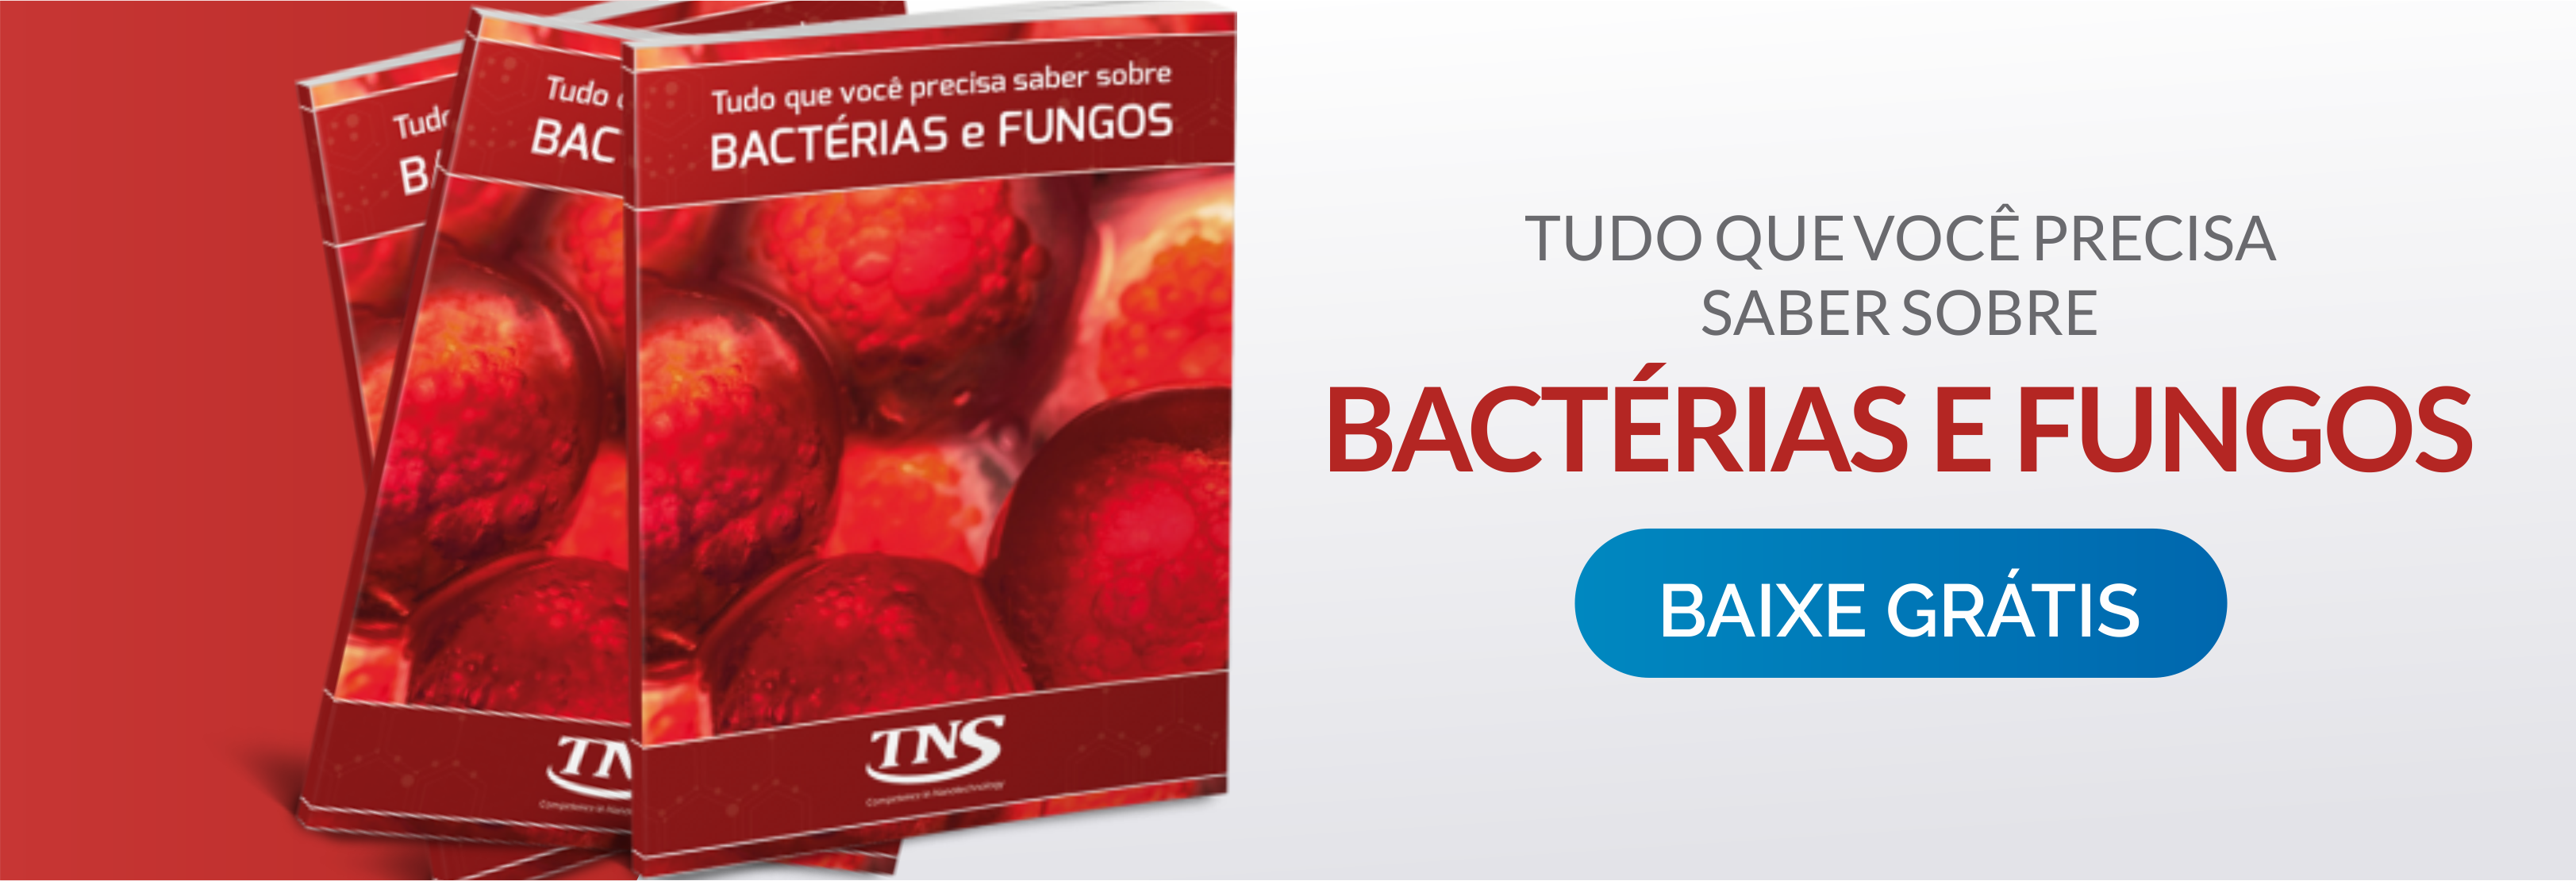 Ebook TNS Tudo que você precisa saber sobre Bactérias e Fungos